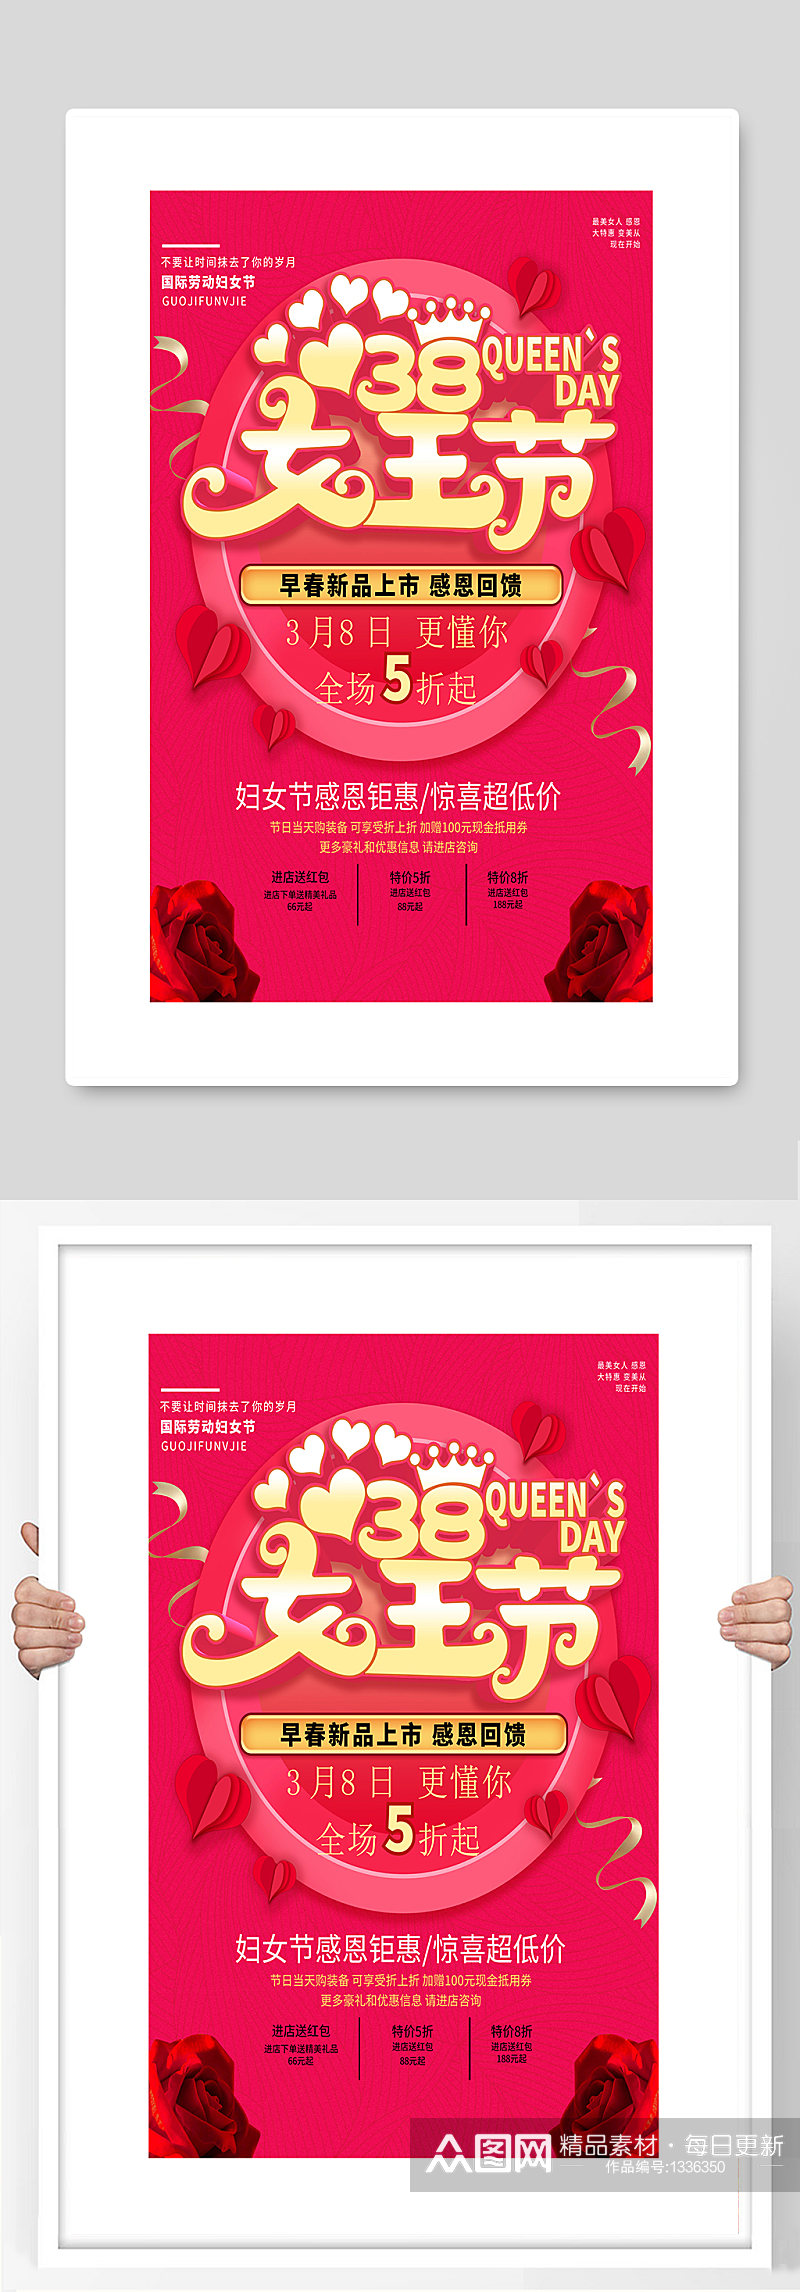 38女王节海报设计制作素材